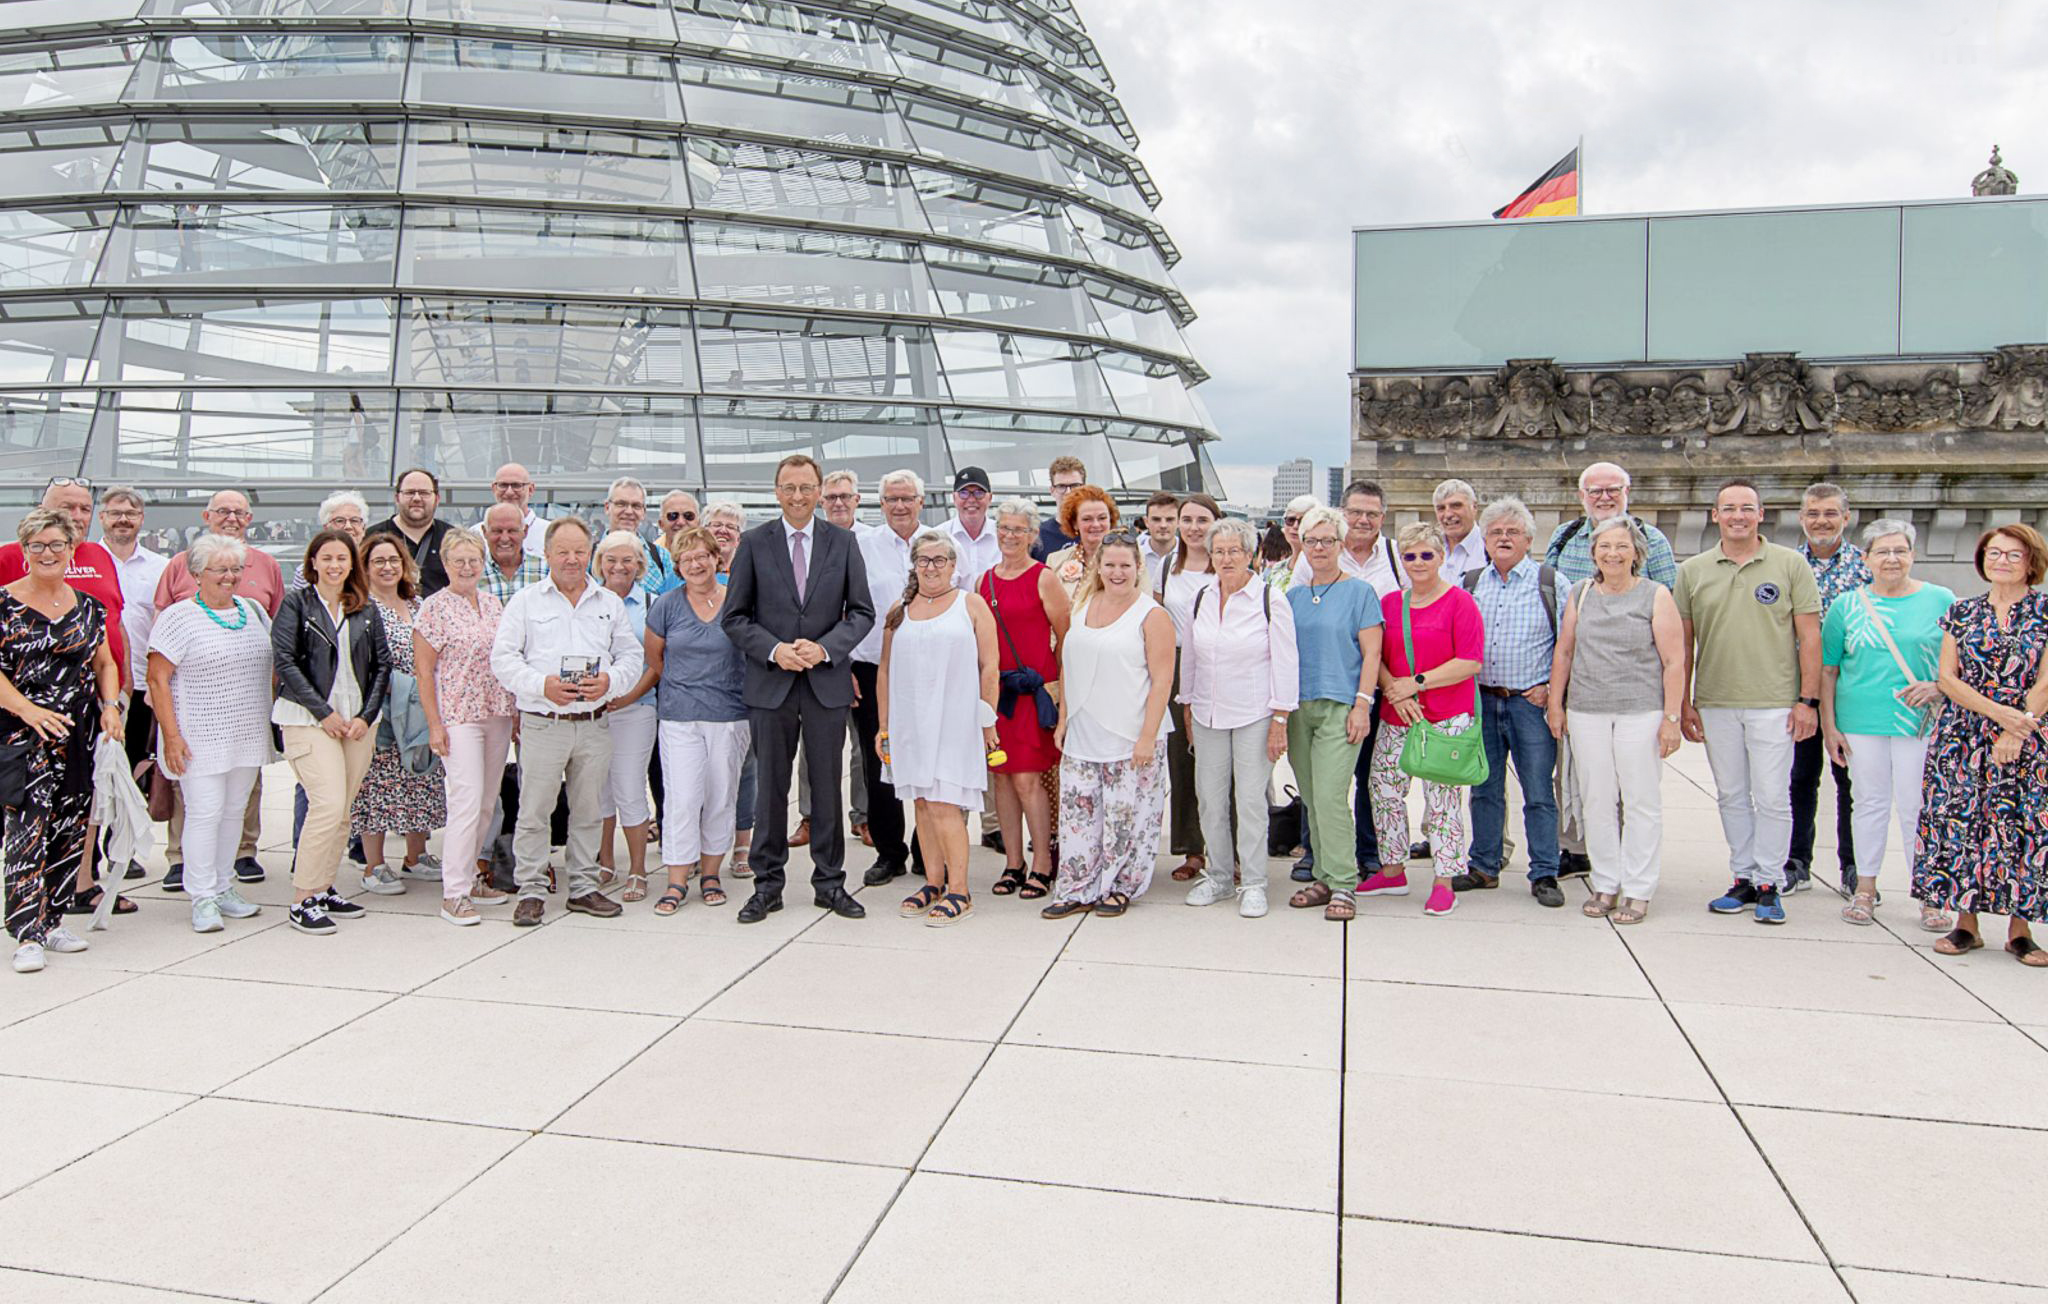 <a href="https://www.josef-oster.de/josef-oster/im-bundestag/besuch-im-bundestag">Politik erleben – Besuch im Bundestag</a>